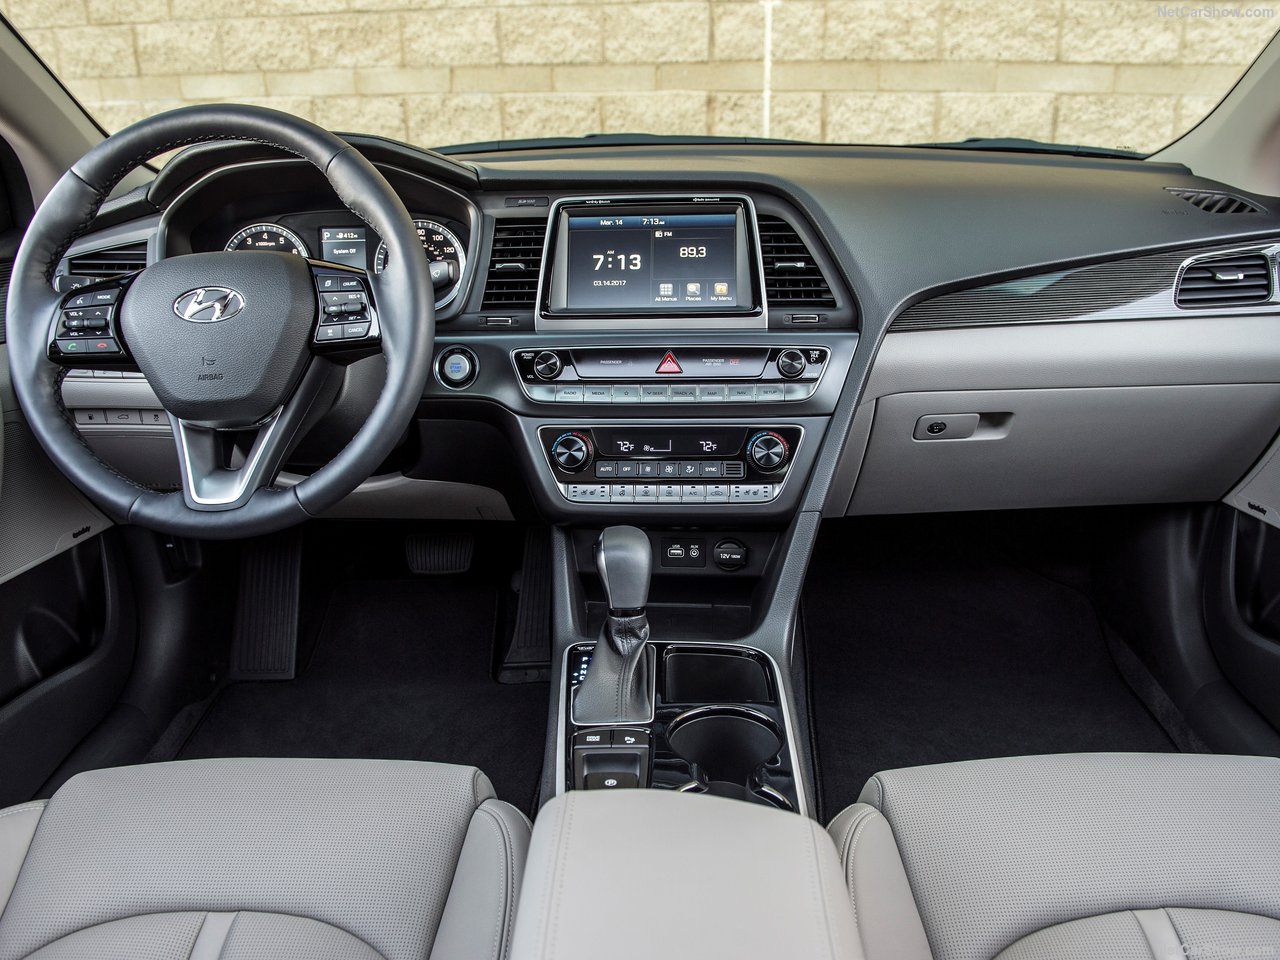 Hyundai Sonata interior front view